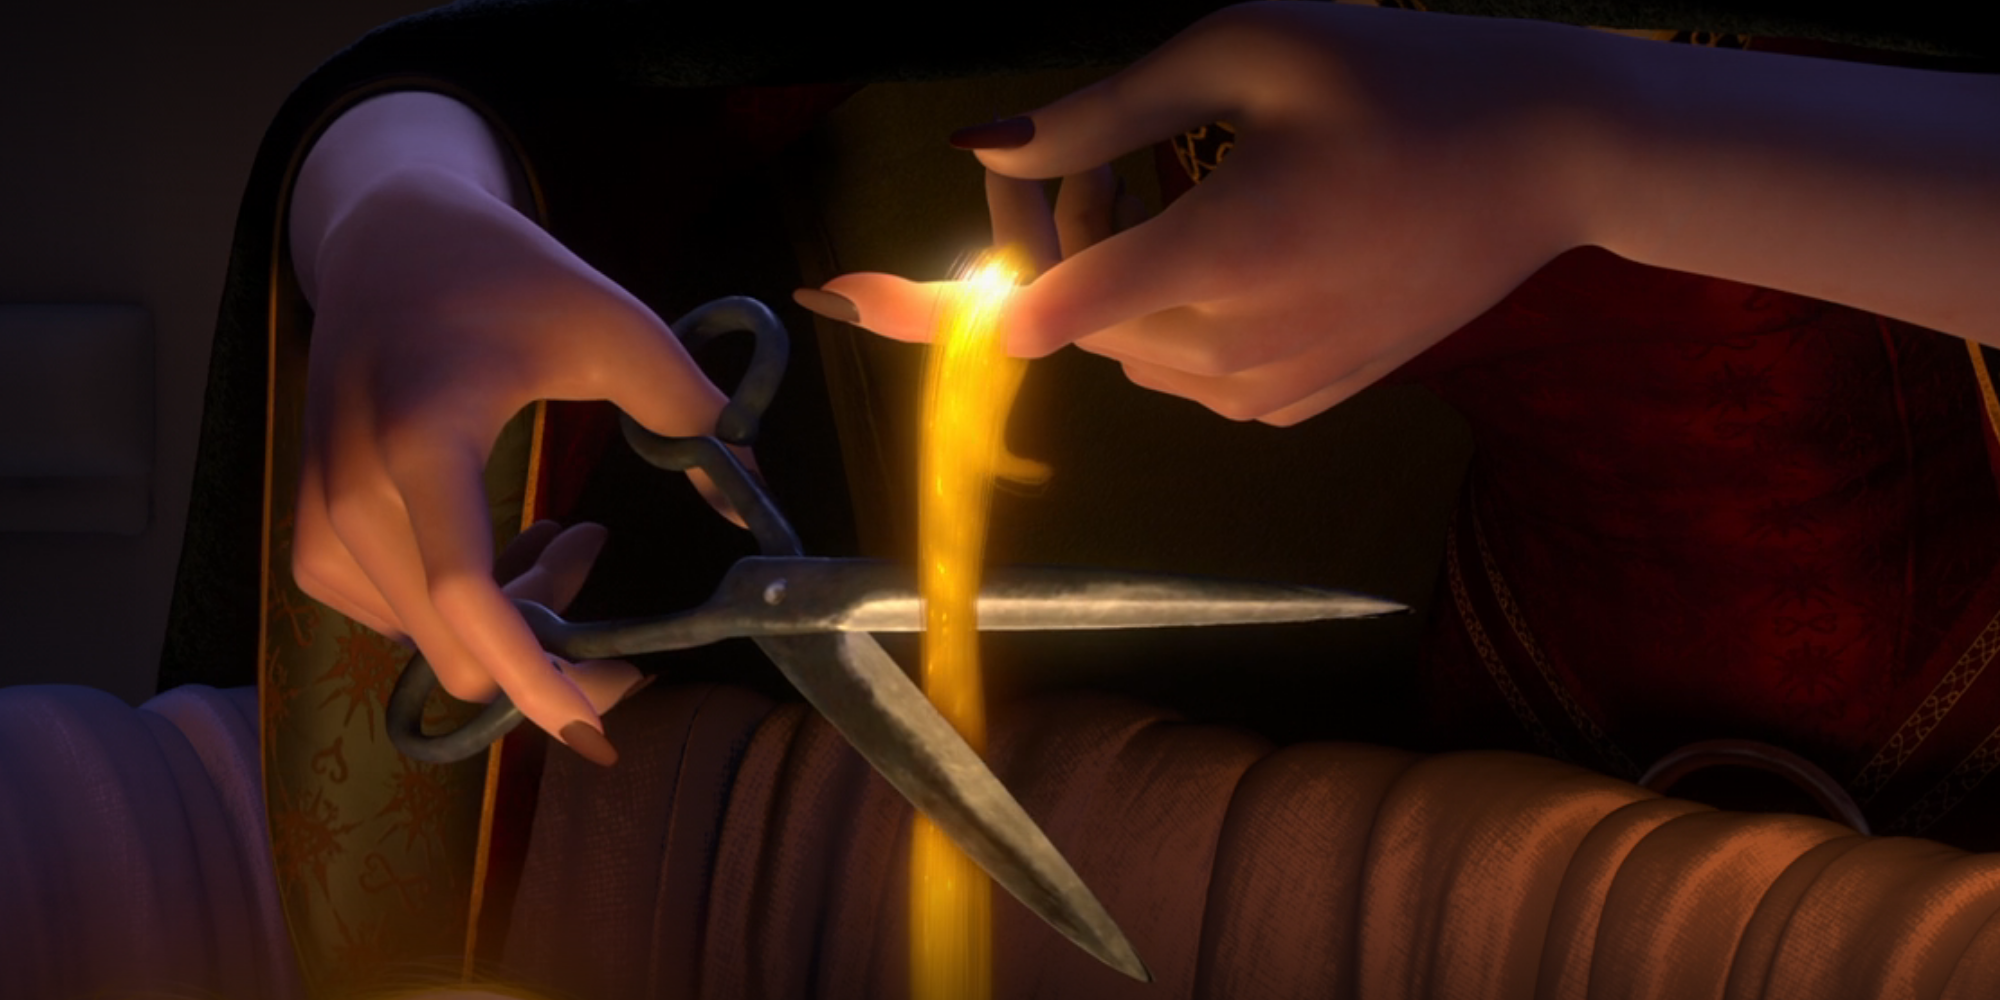 Mother Gothel cuts Rapunzel's magic hair.